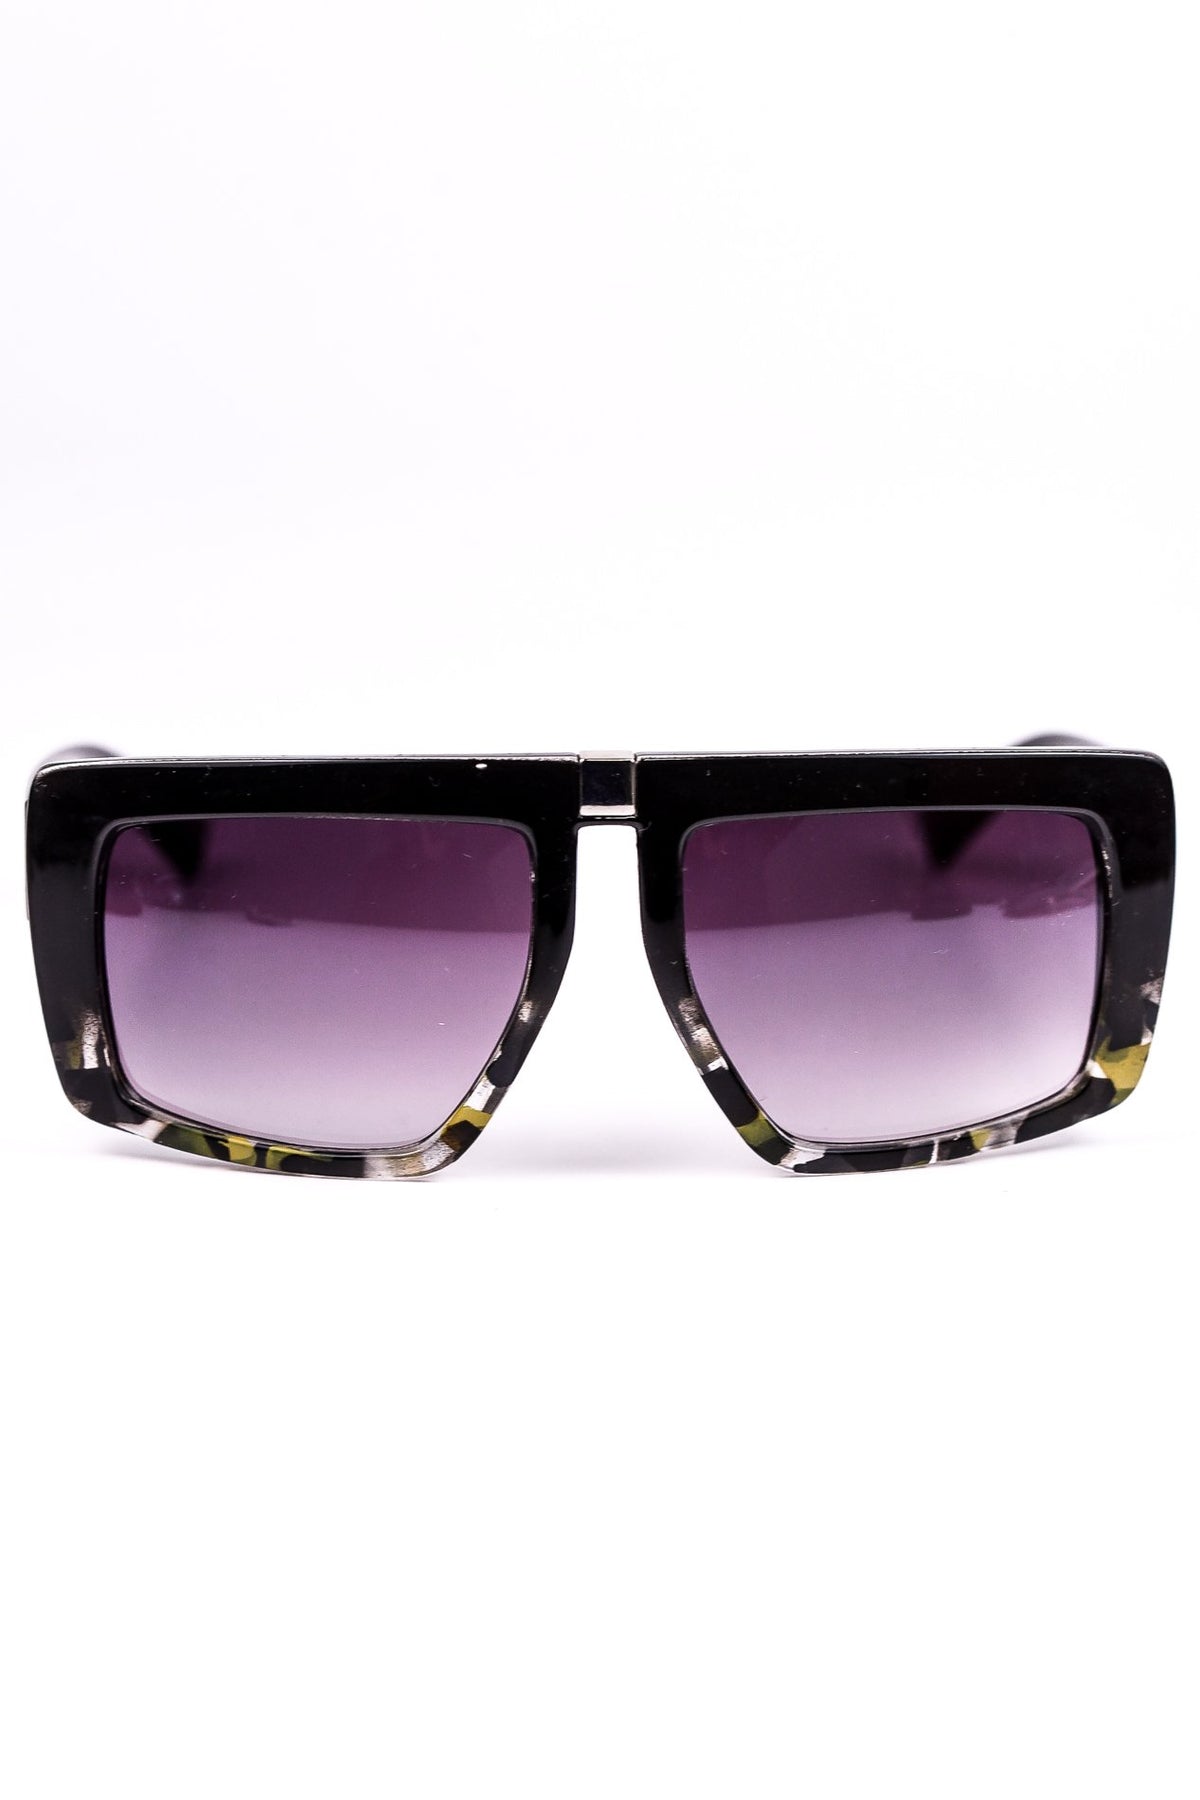 Black & Olive Tortoise Shell Frame/Purple Lens Sunglasses - SGL168BK - FREE hard case